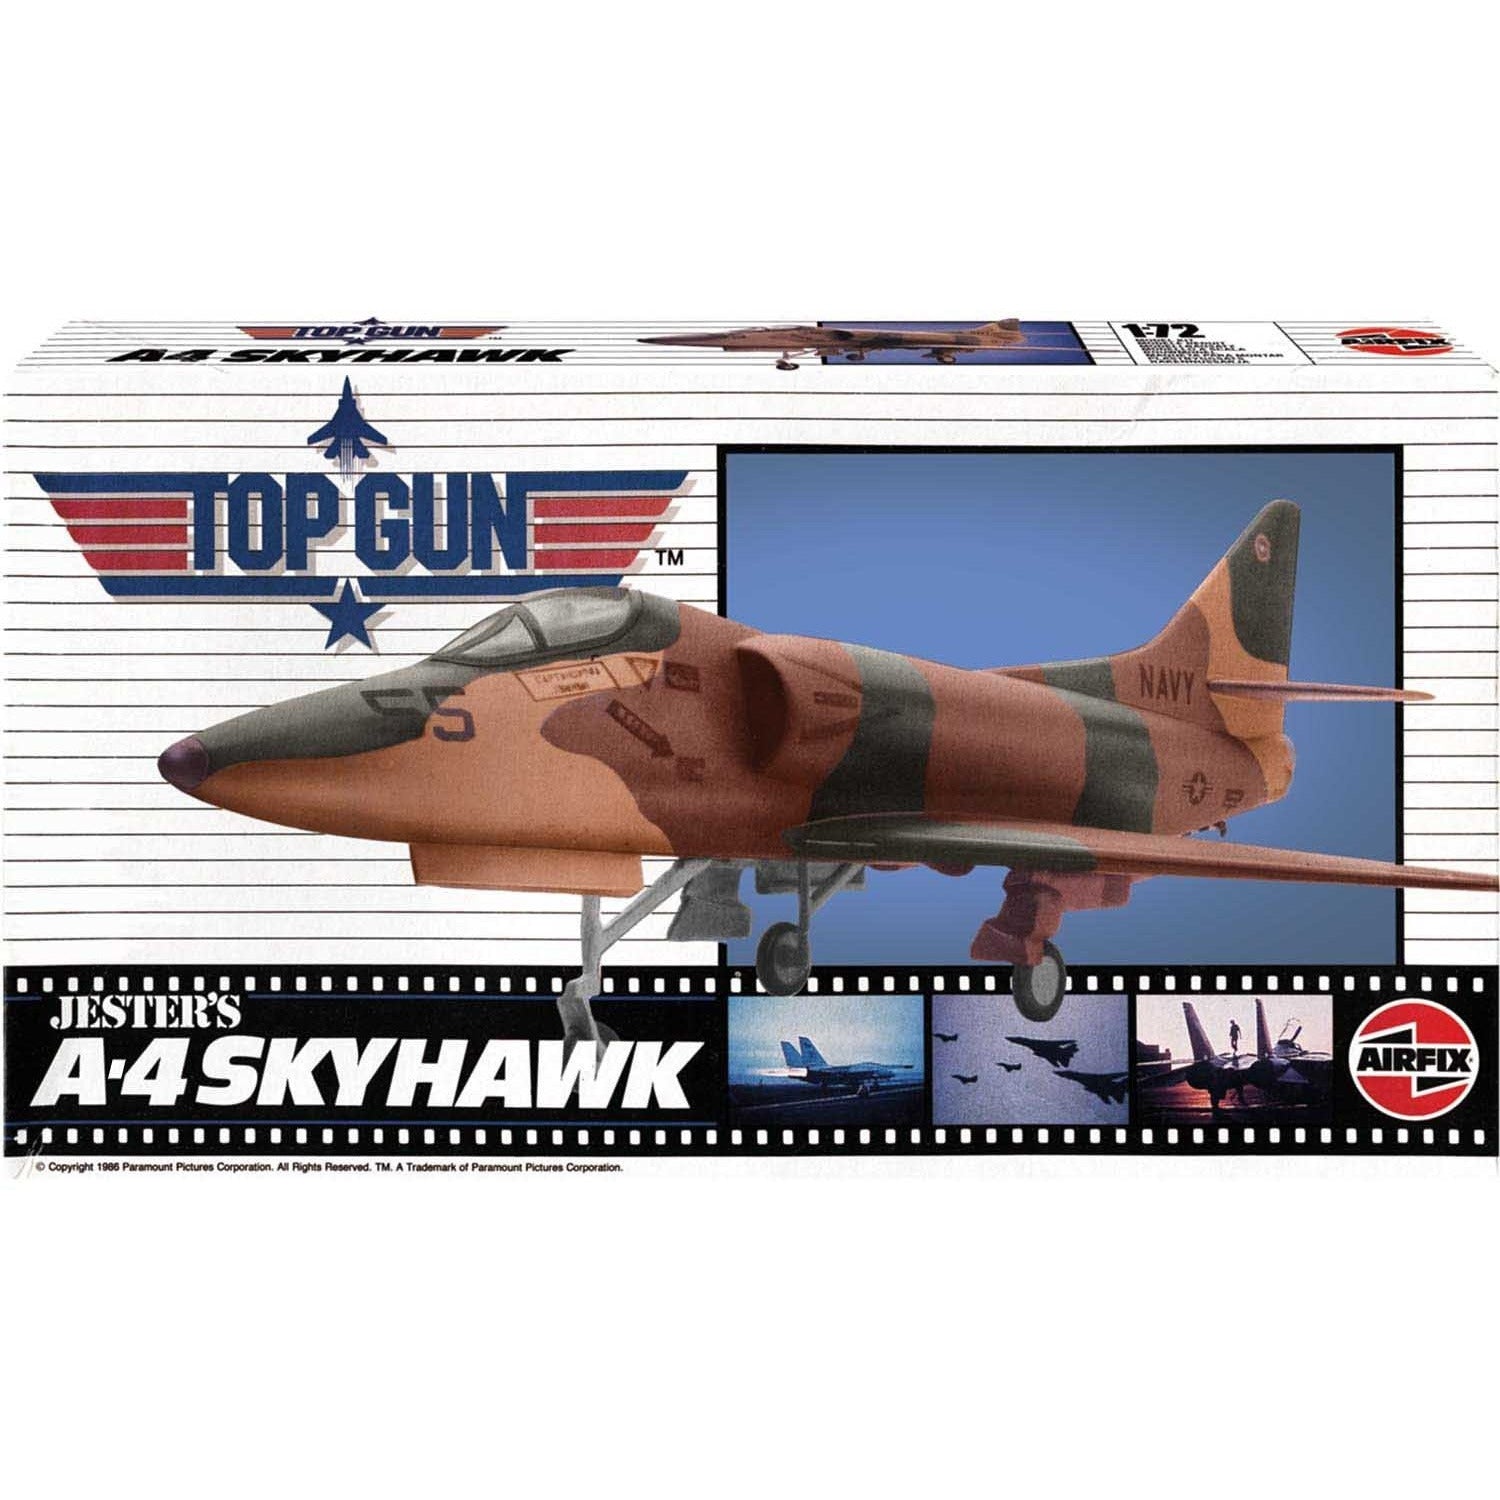 Jester's A-4 Skyhawk 1/72 from Top Gun #00501 by Airfix